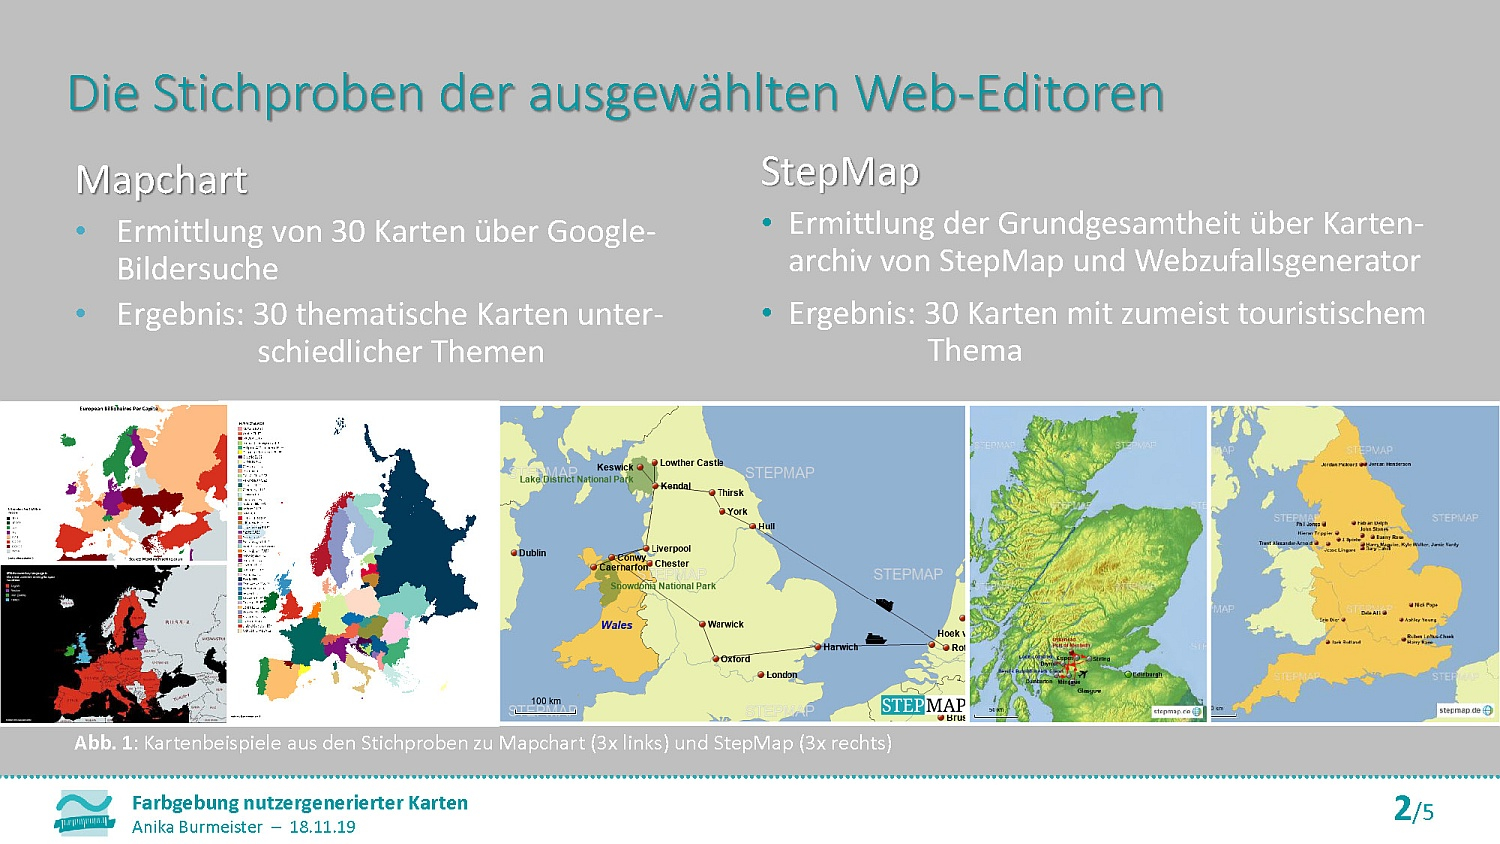 Präsentation: Farbgebung nutzergenerierter Karten – Eine Untersuchung zur Qualität der Farbanwendung im Bereich Webmapping 2.0 am Beispiel von zwei ausgewählten Web-Editoren